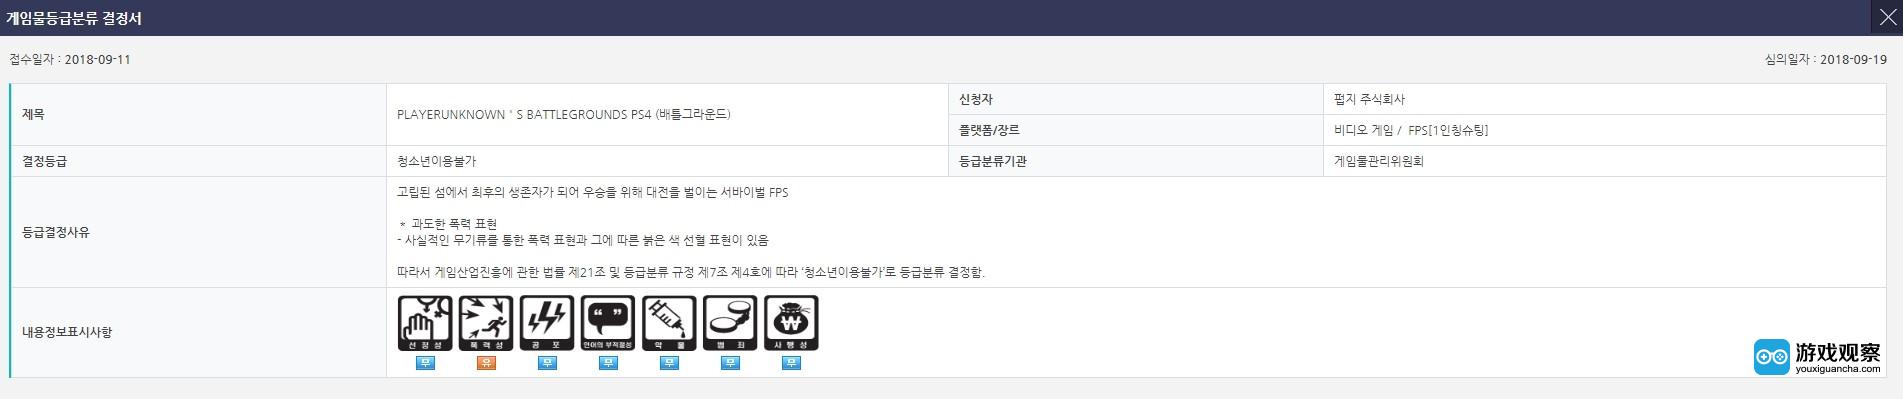 《绝地求生》PS4版曝光 正在韩国评级网站审查